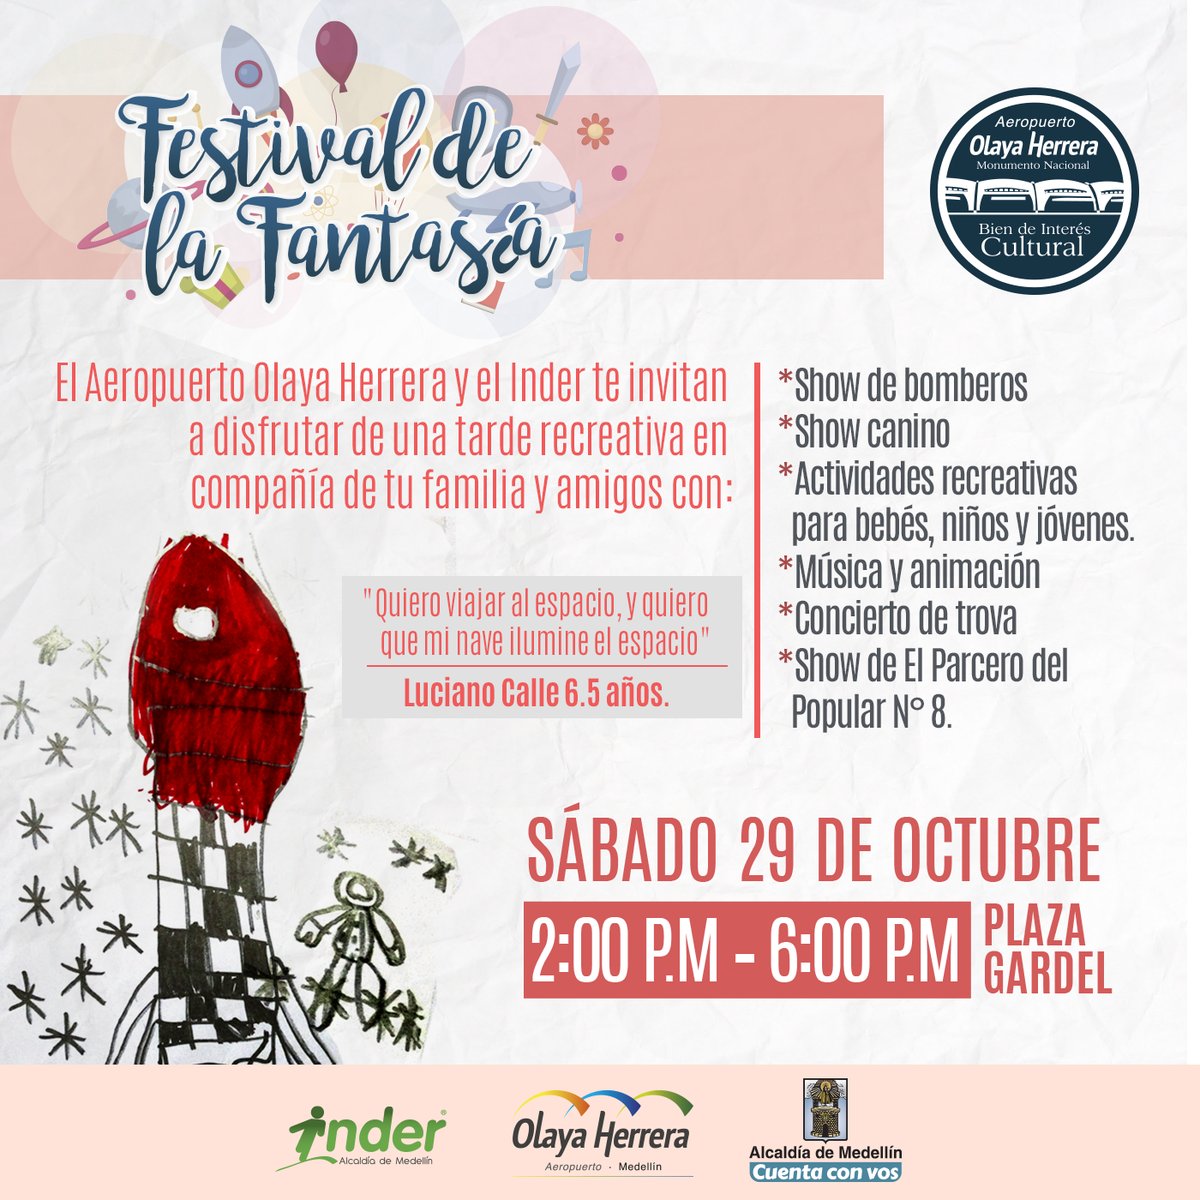 Los niños de Medellín serán los invitados al Festival de la Fantasía en el Olaya Herrera este sábado 29 de octubre